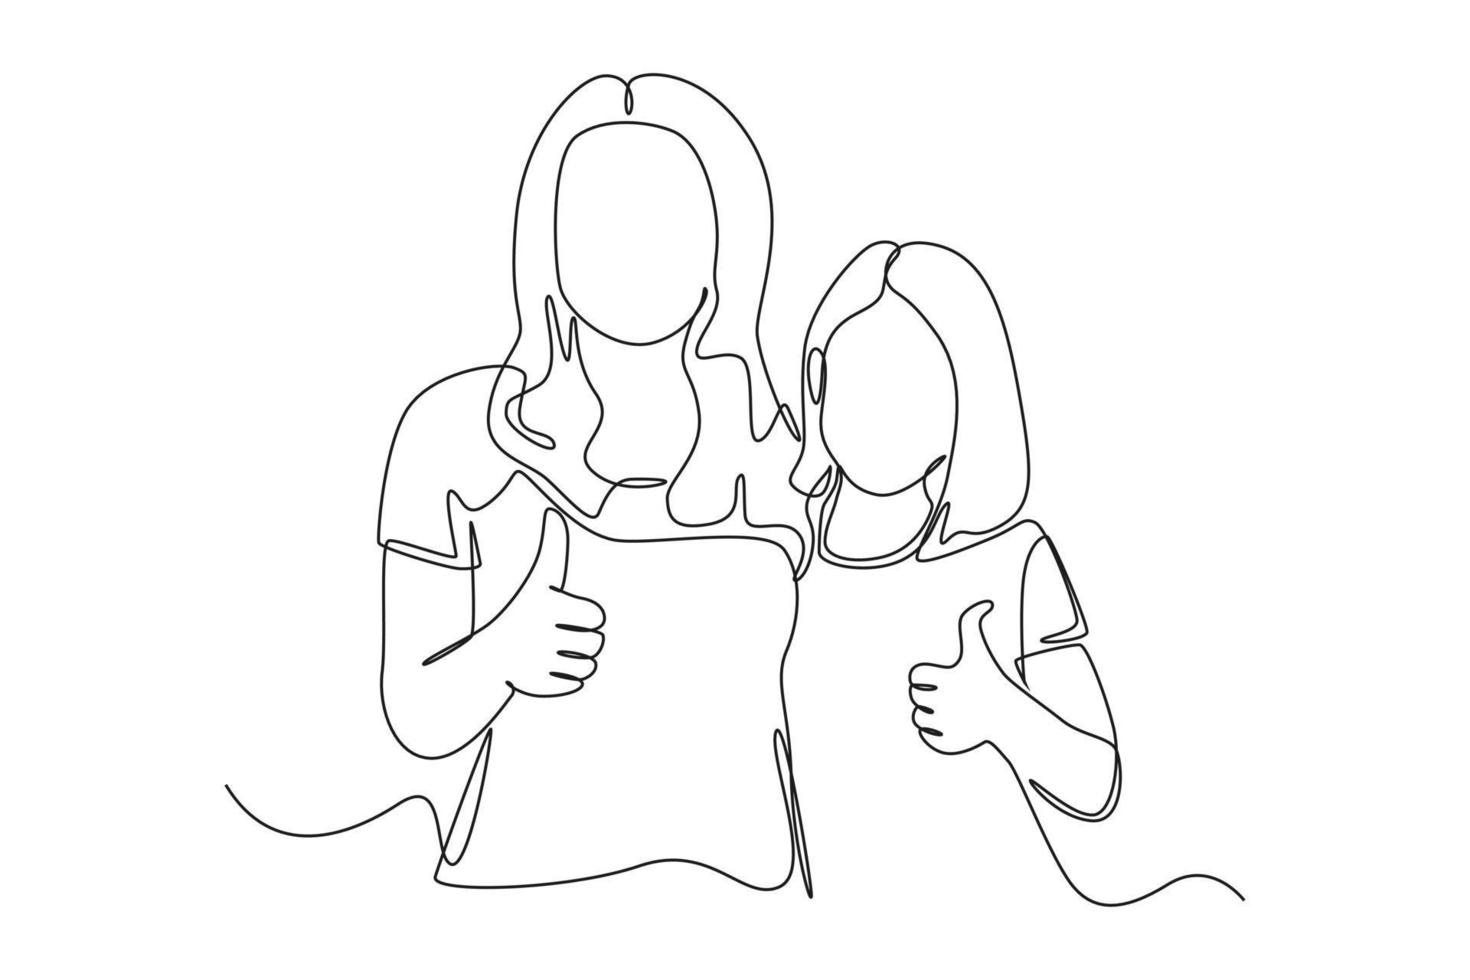 doorlopend een lijn tekening mama en dochter houden duim vingers verheven omhoog. verhogen tieners concept. single lijn trek ontwerp vector grafisch illustratie.